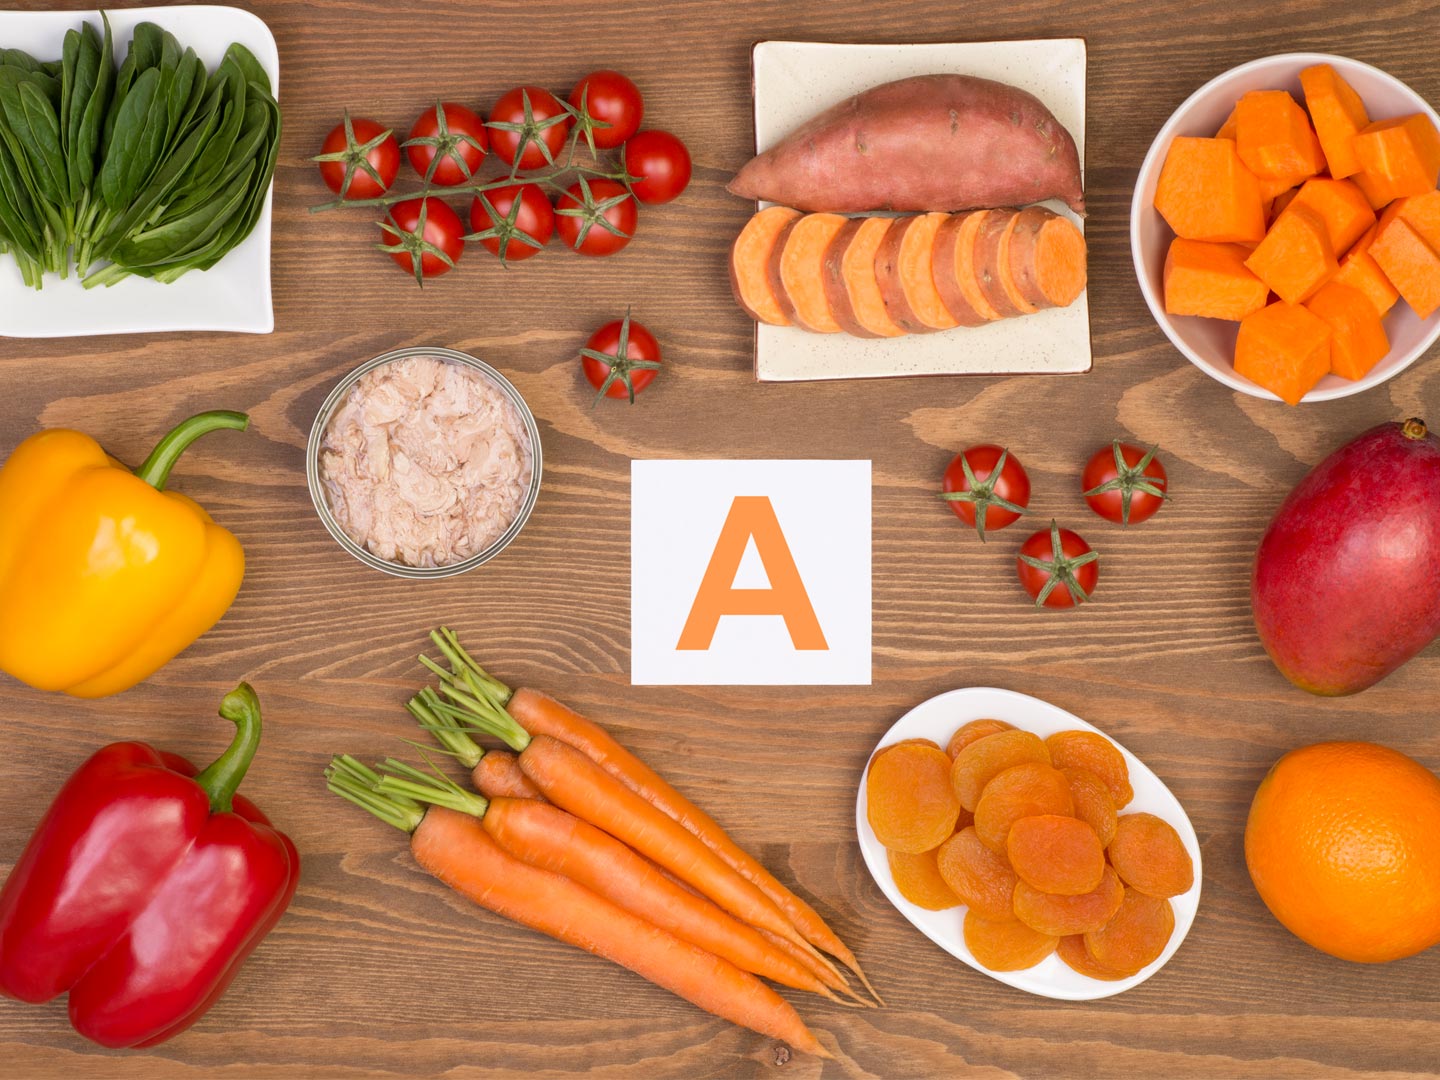 12 نوع من الأطعمة تحتوي على نسبة عالية من فيتامين أ - me-ana